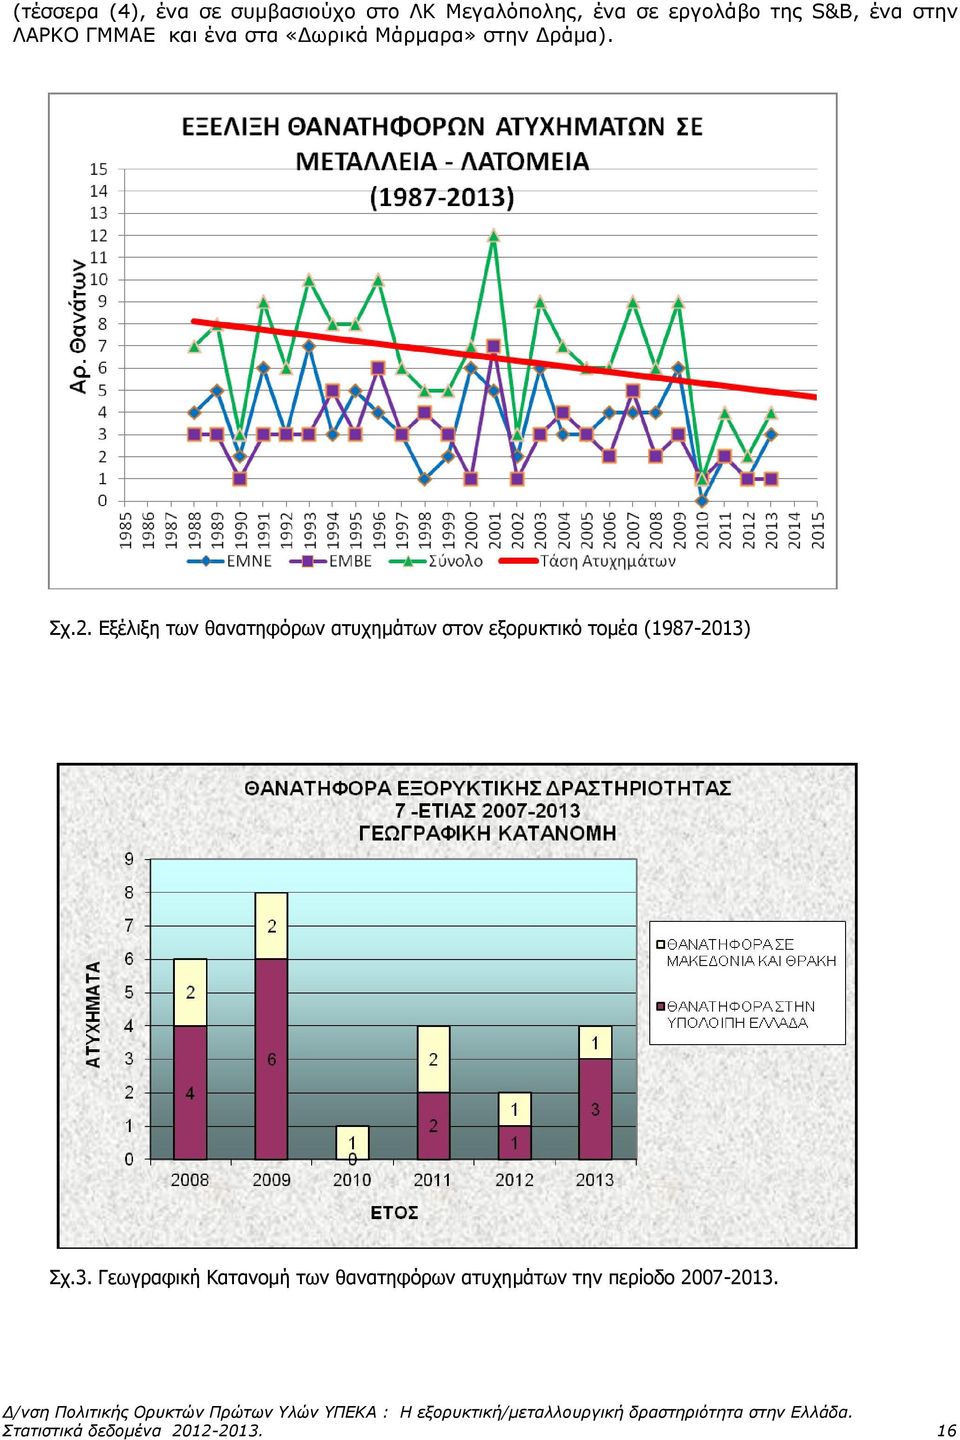 Δξέλιξη ηων θαναηηθόπων αηςσημάηων ζηον εξοπςκηικό ηομέα (1987-2013)